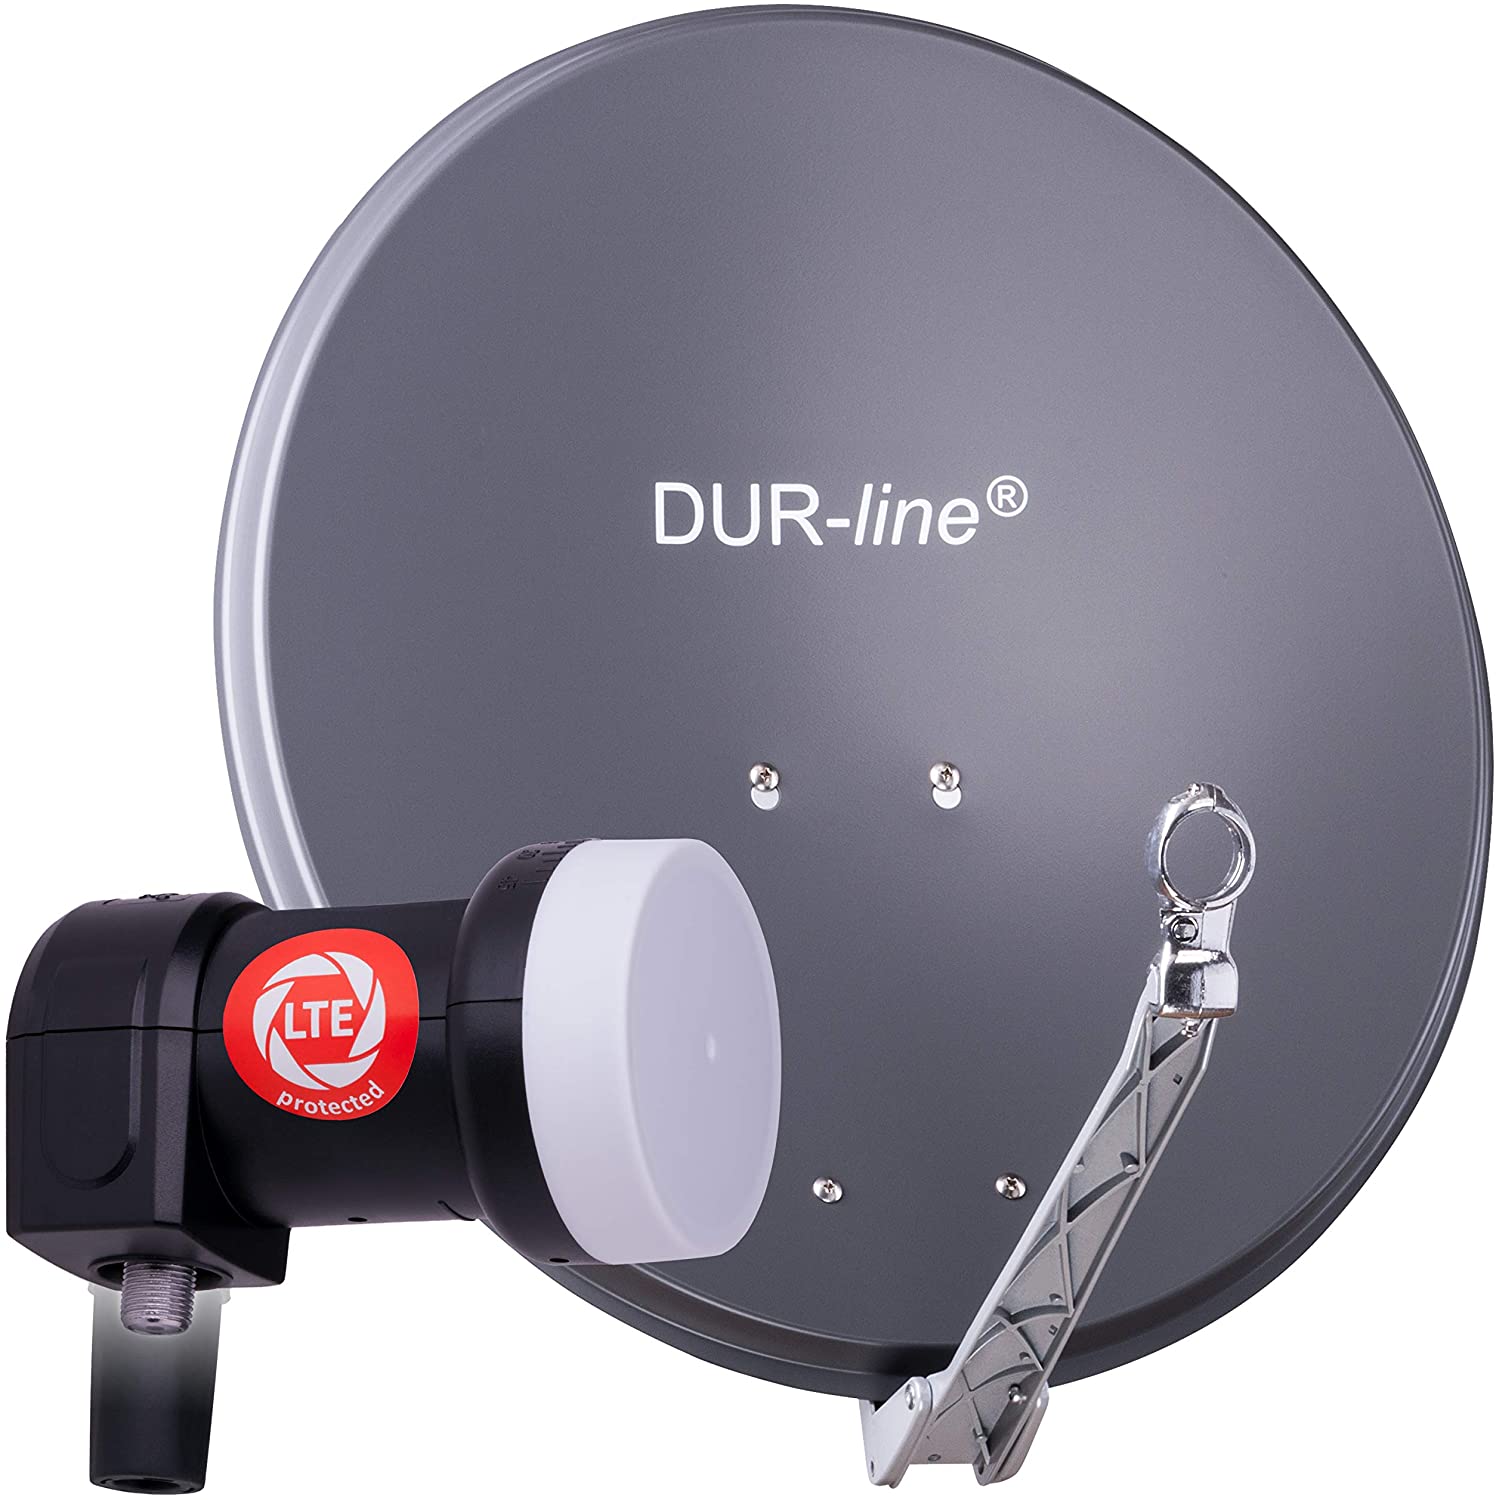 DUR-line 1 Teilnehmer Set 60 cm - Qualitäts-Sat-Komplettanlage 12236 Select 60cm/65cm Spiegel/Schüssel + Single LNB anthrazit - für 1 Receiver/TV [Neuste Technik DVB-S2 4K 3D]